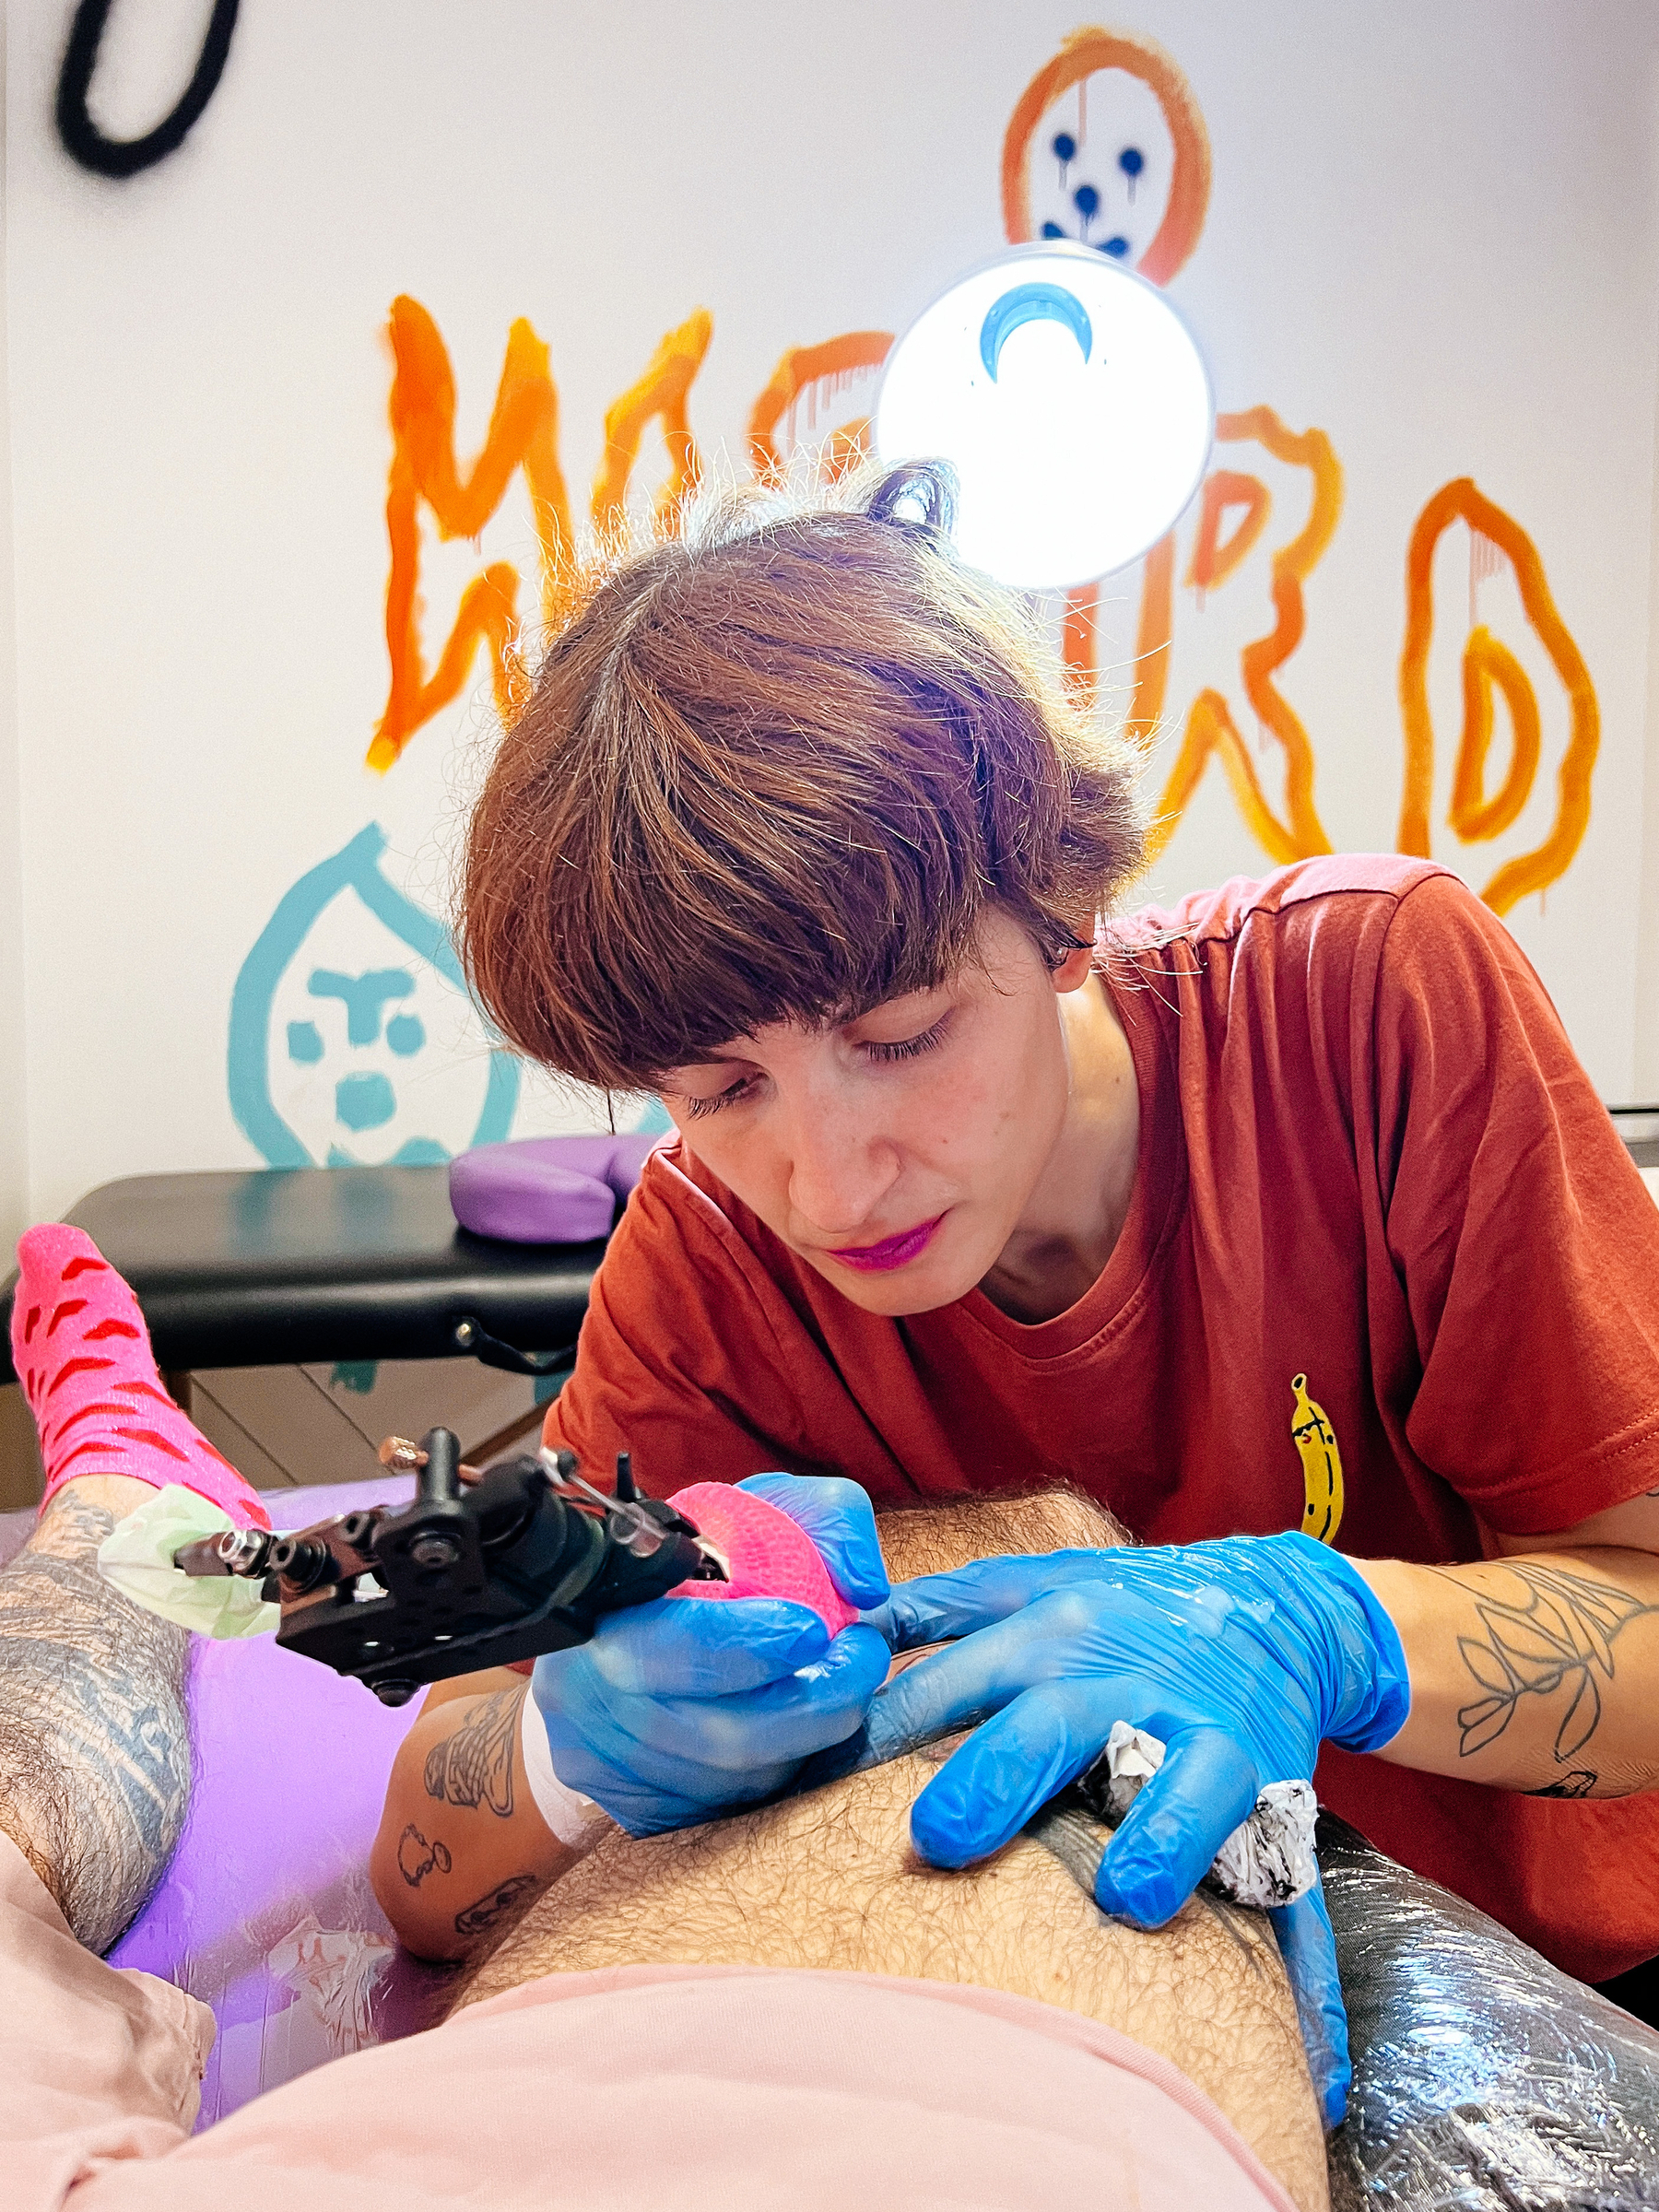 A girl tattoo artist works on a leg. “Weird” written on the wall behind her. 